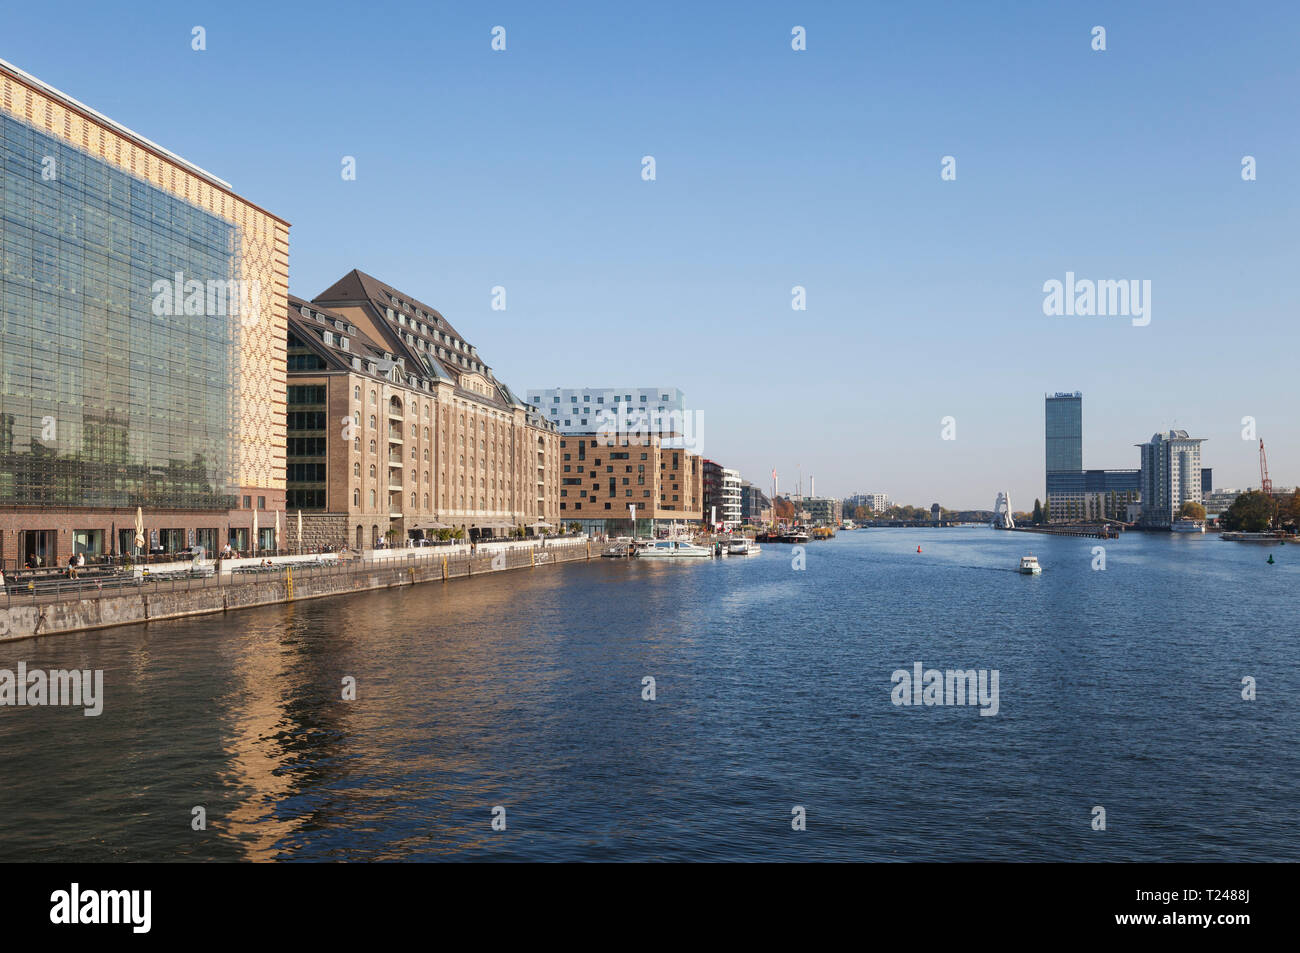 Alemania, Osthafen Berlin-Friedrichshain, en el río Spree, visto desde el puente Oberbaum Foto de stock